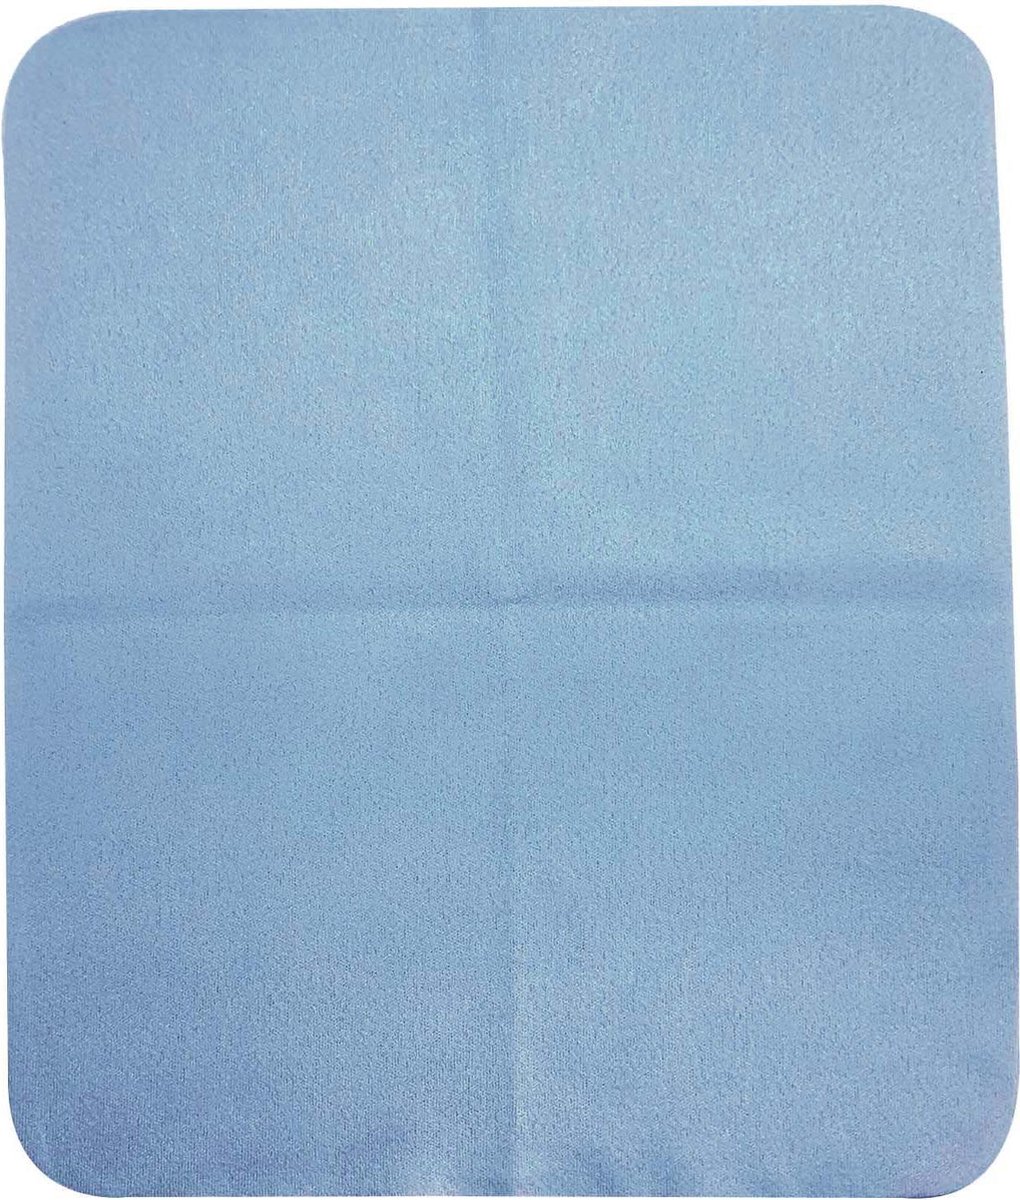 Lensdoekje Synthetische Zeem doeken-Microvezel Doeken-5 stuks (Blauw)-17.5*14.5 cm-voor Muziekinstrument-Lens